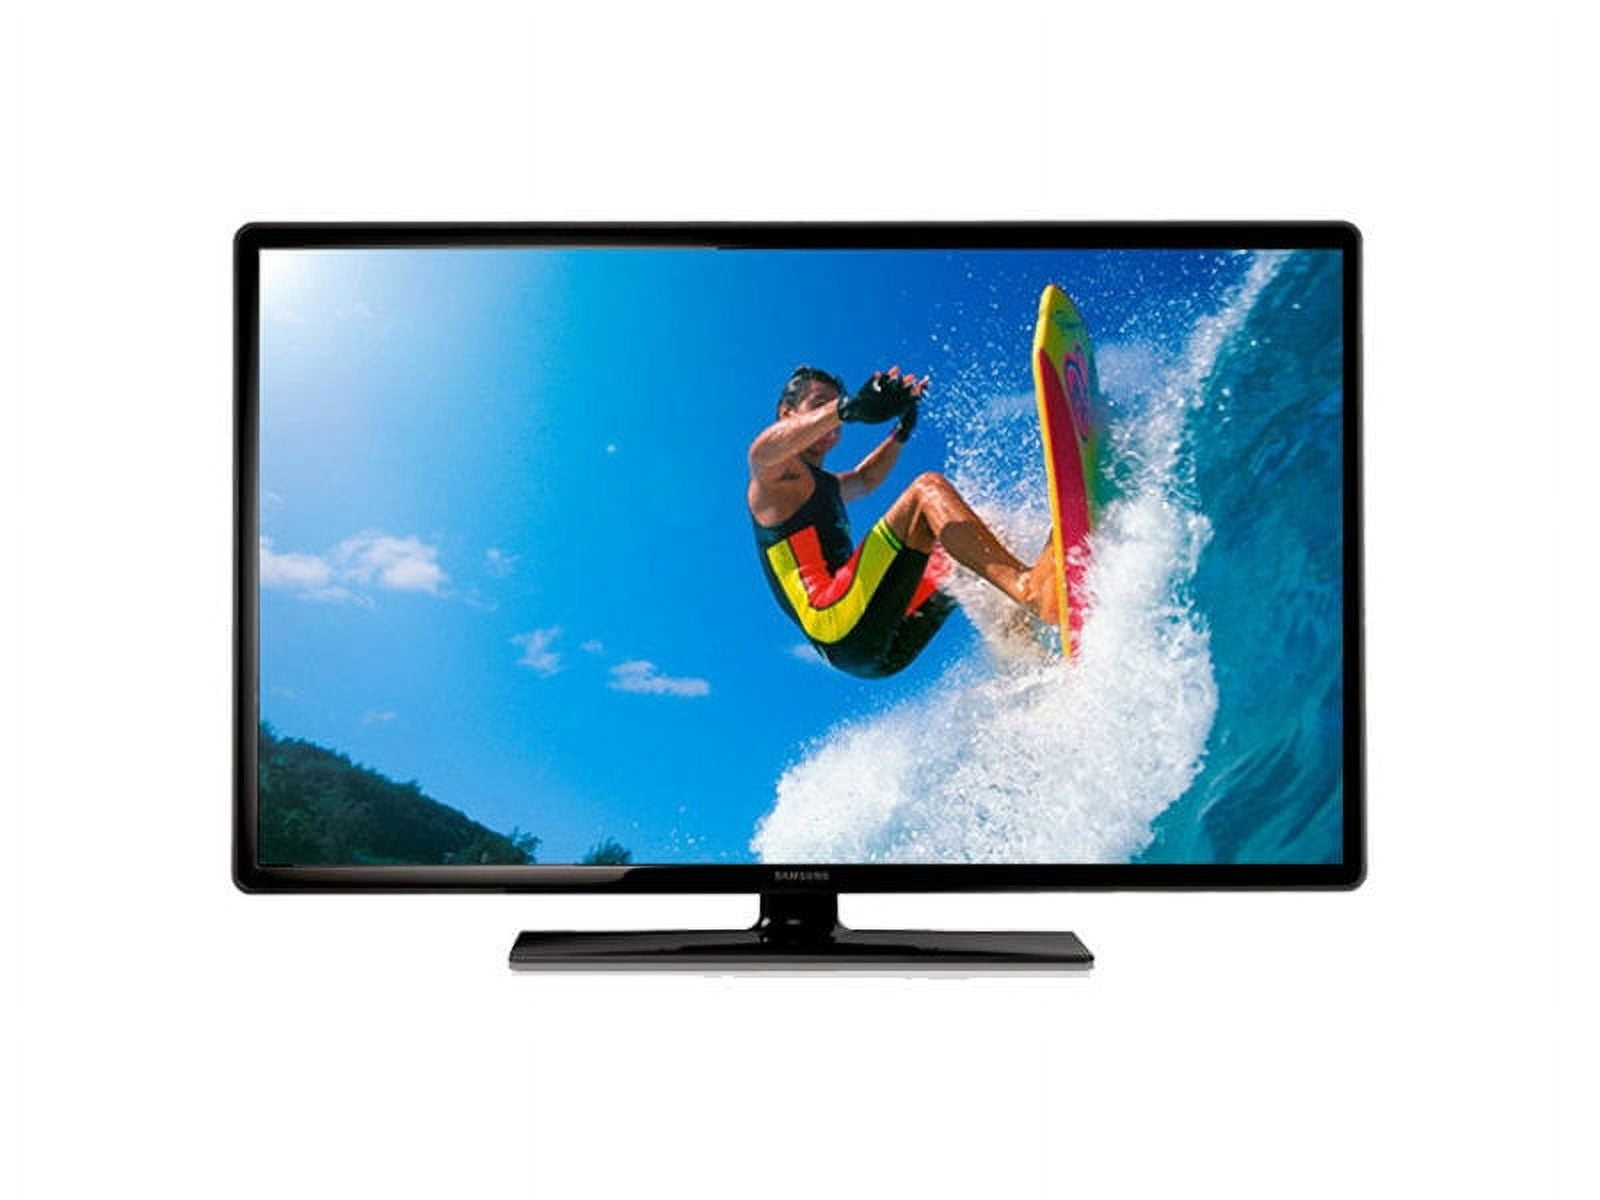 Vendo TV Samsung de 19 pulgadas - El Salvador